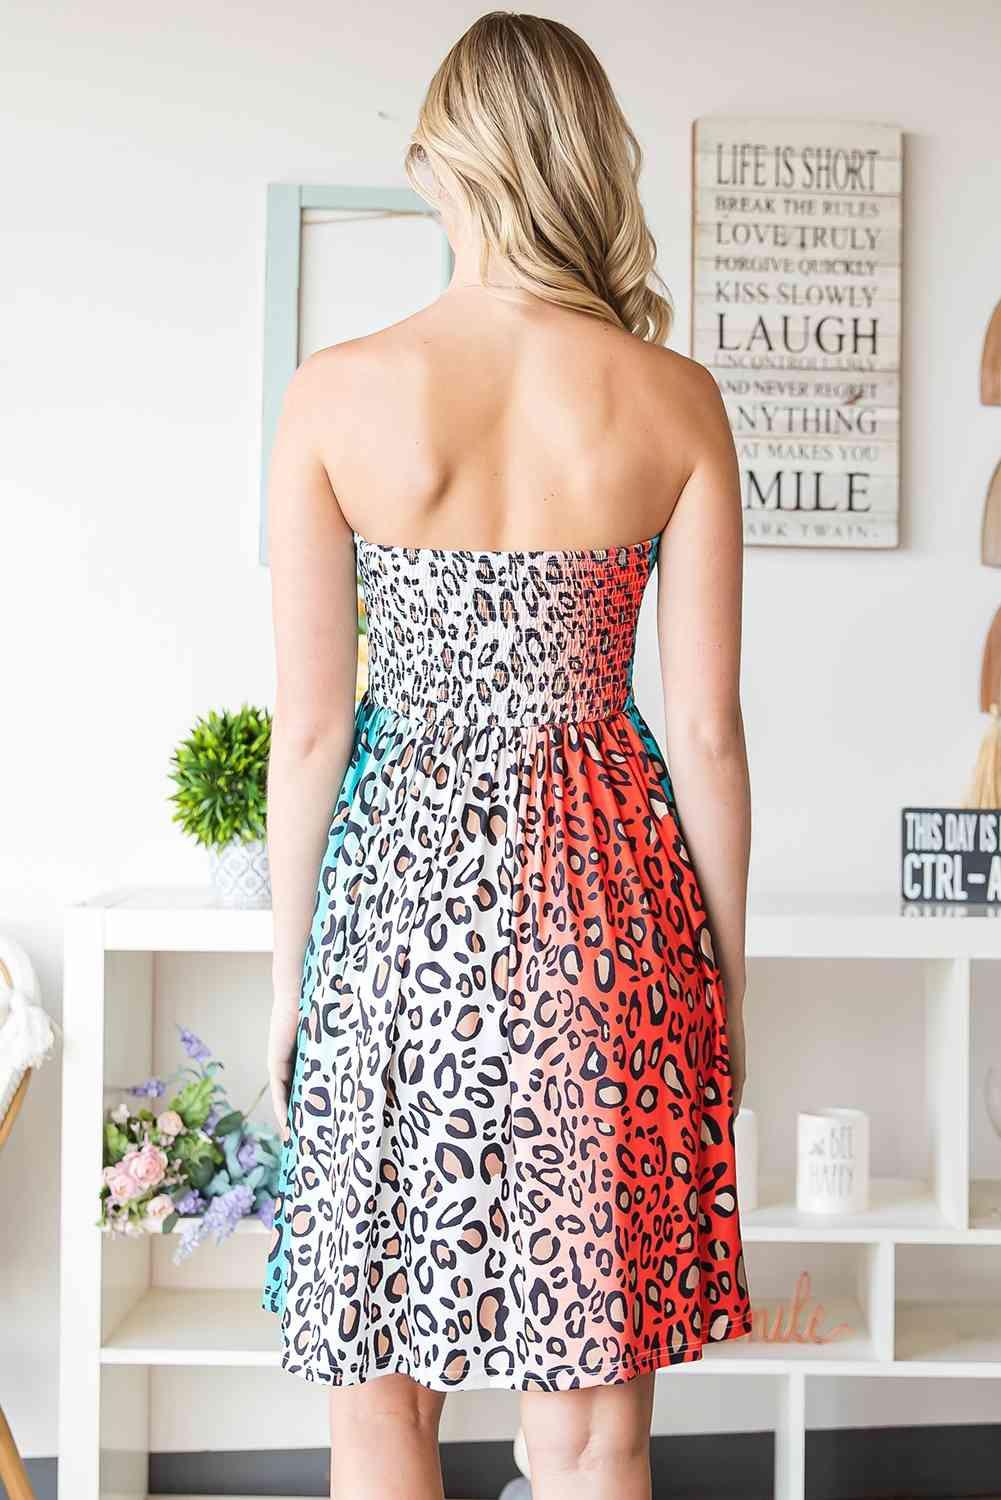 a woman in a leopard print dress